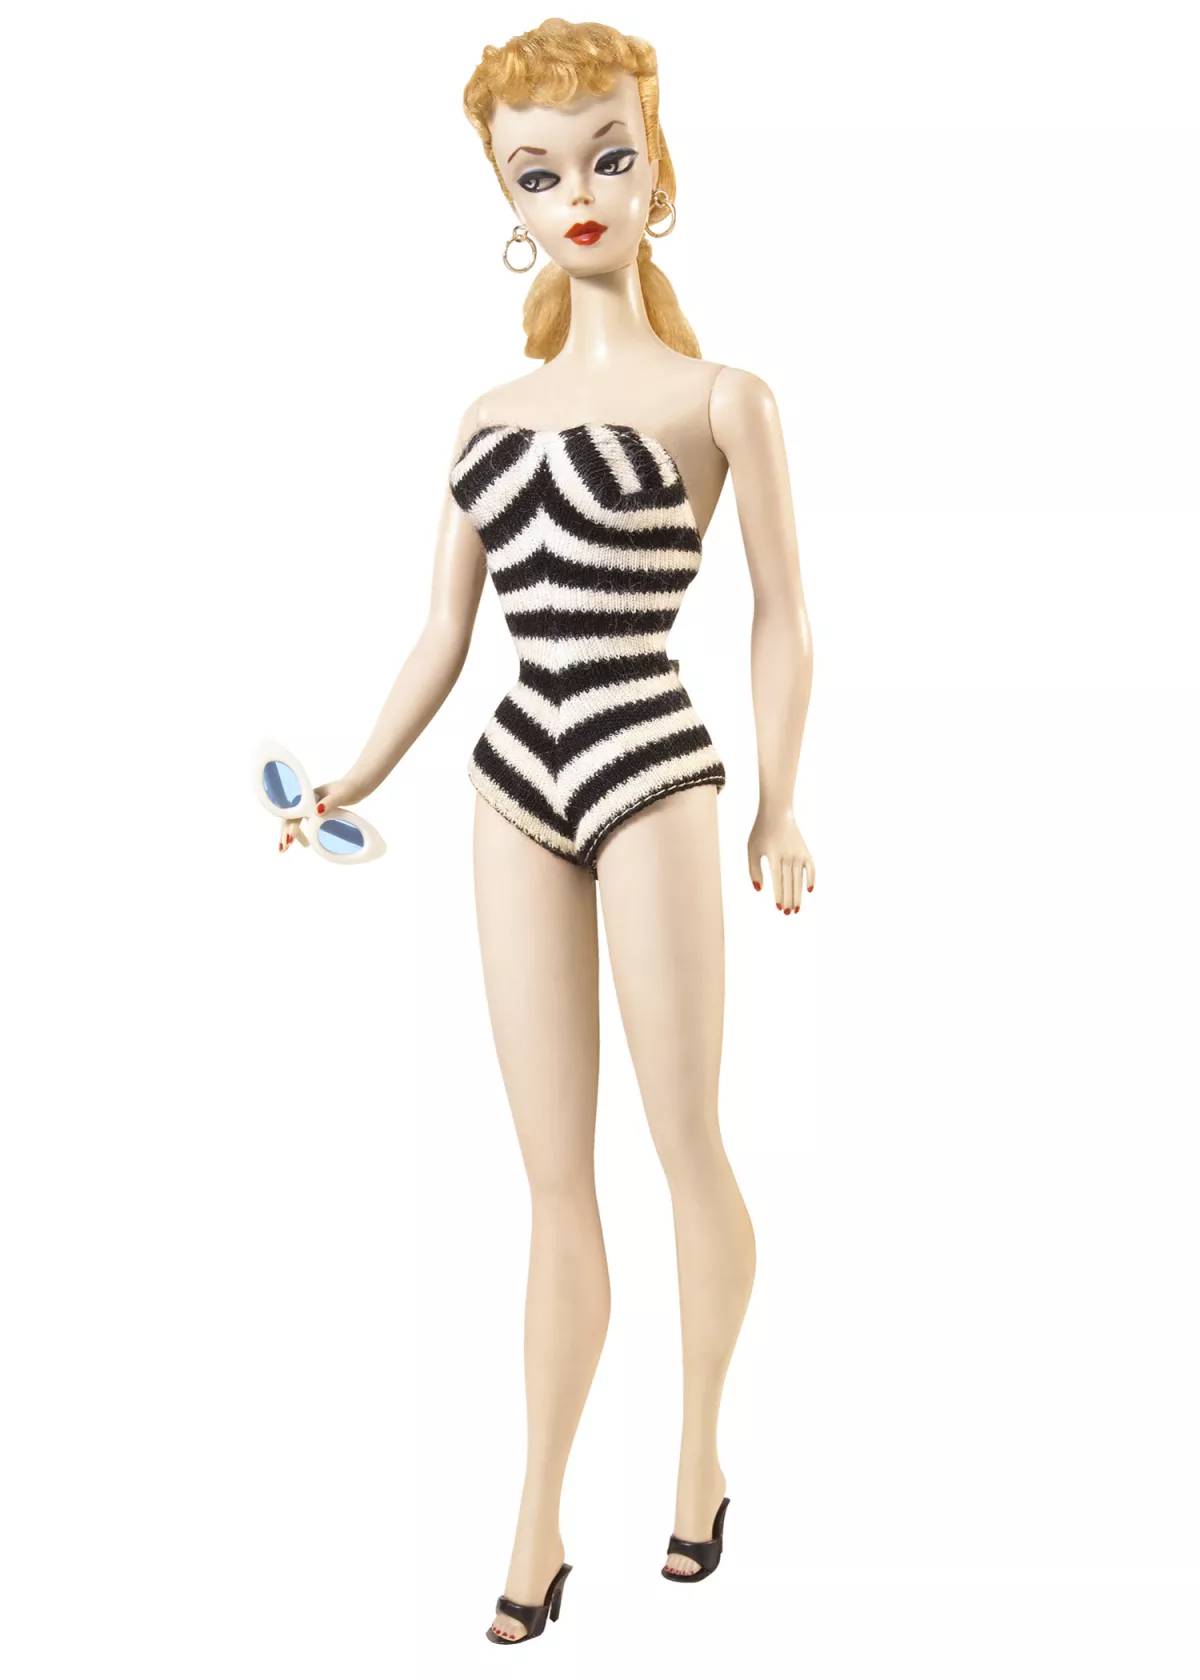 Die "Teenage Fashion Model Barbie" von 1959.